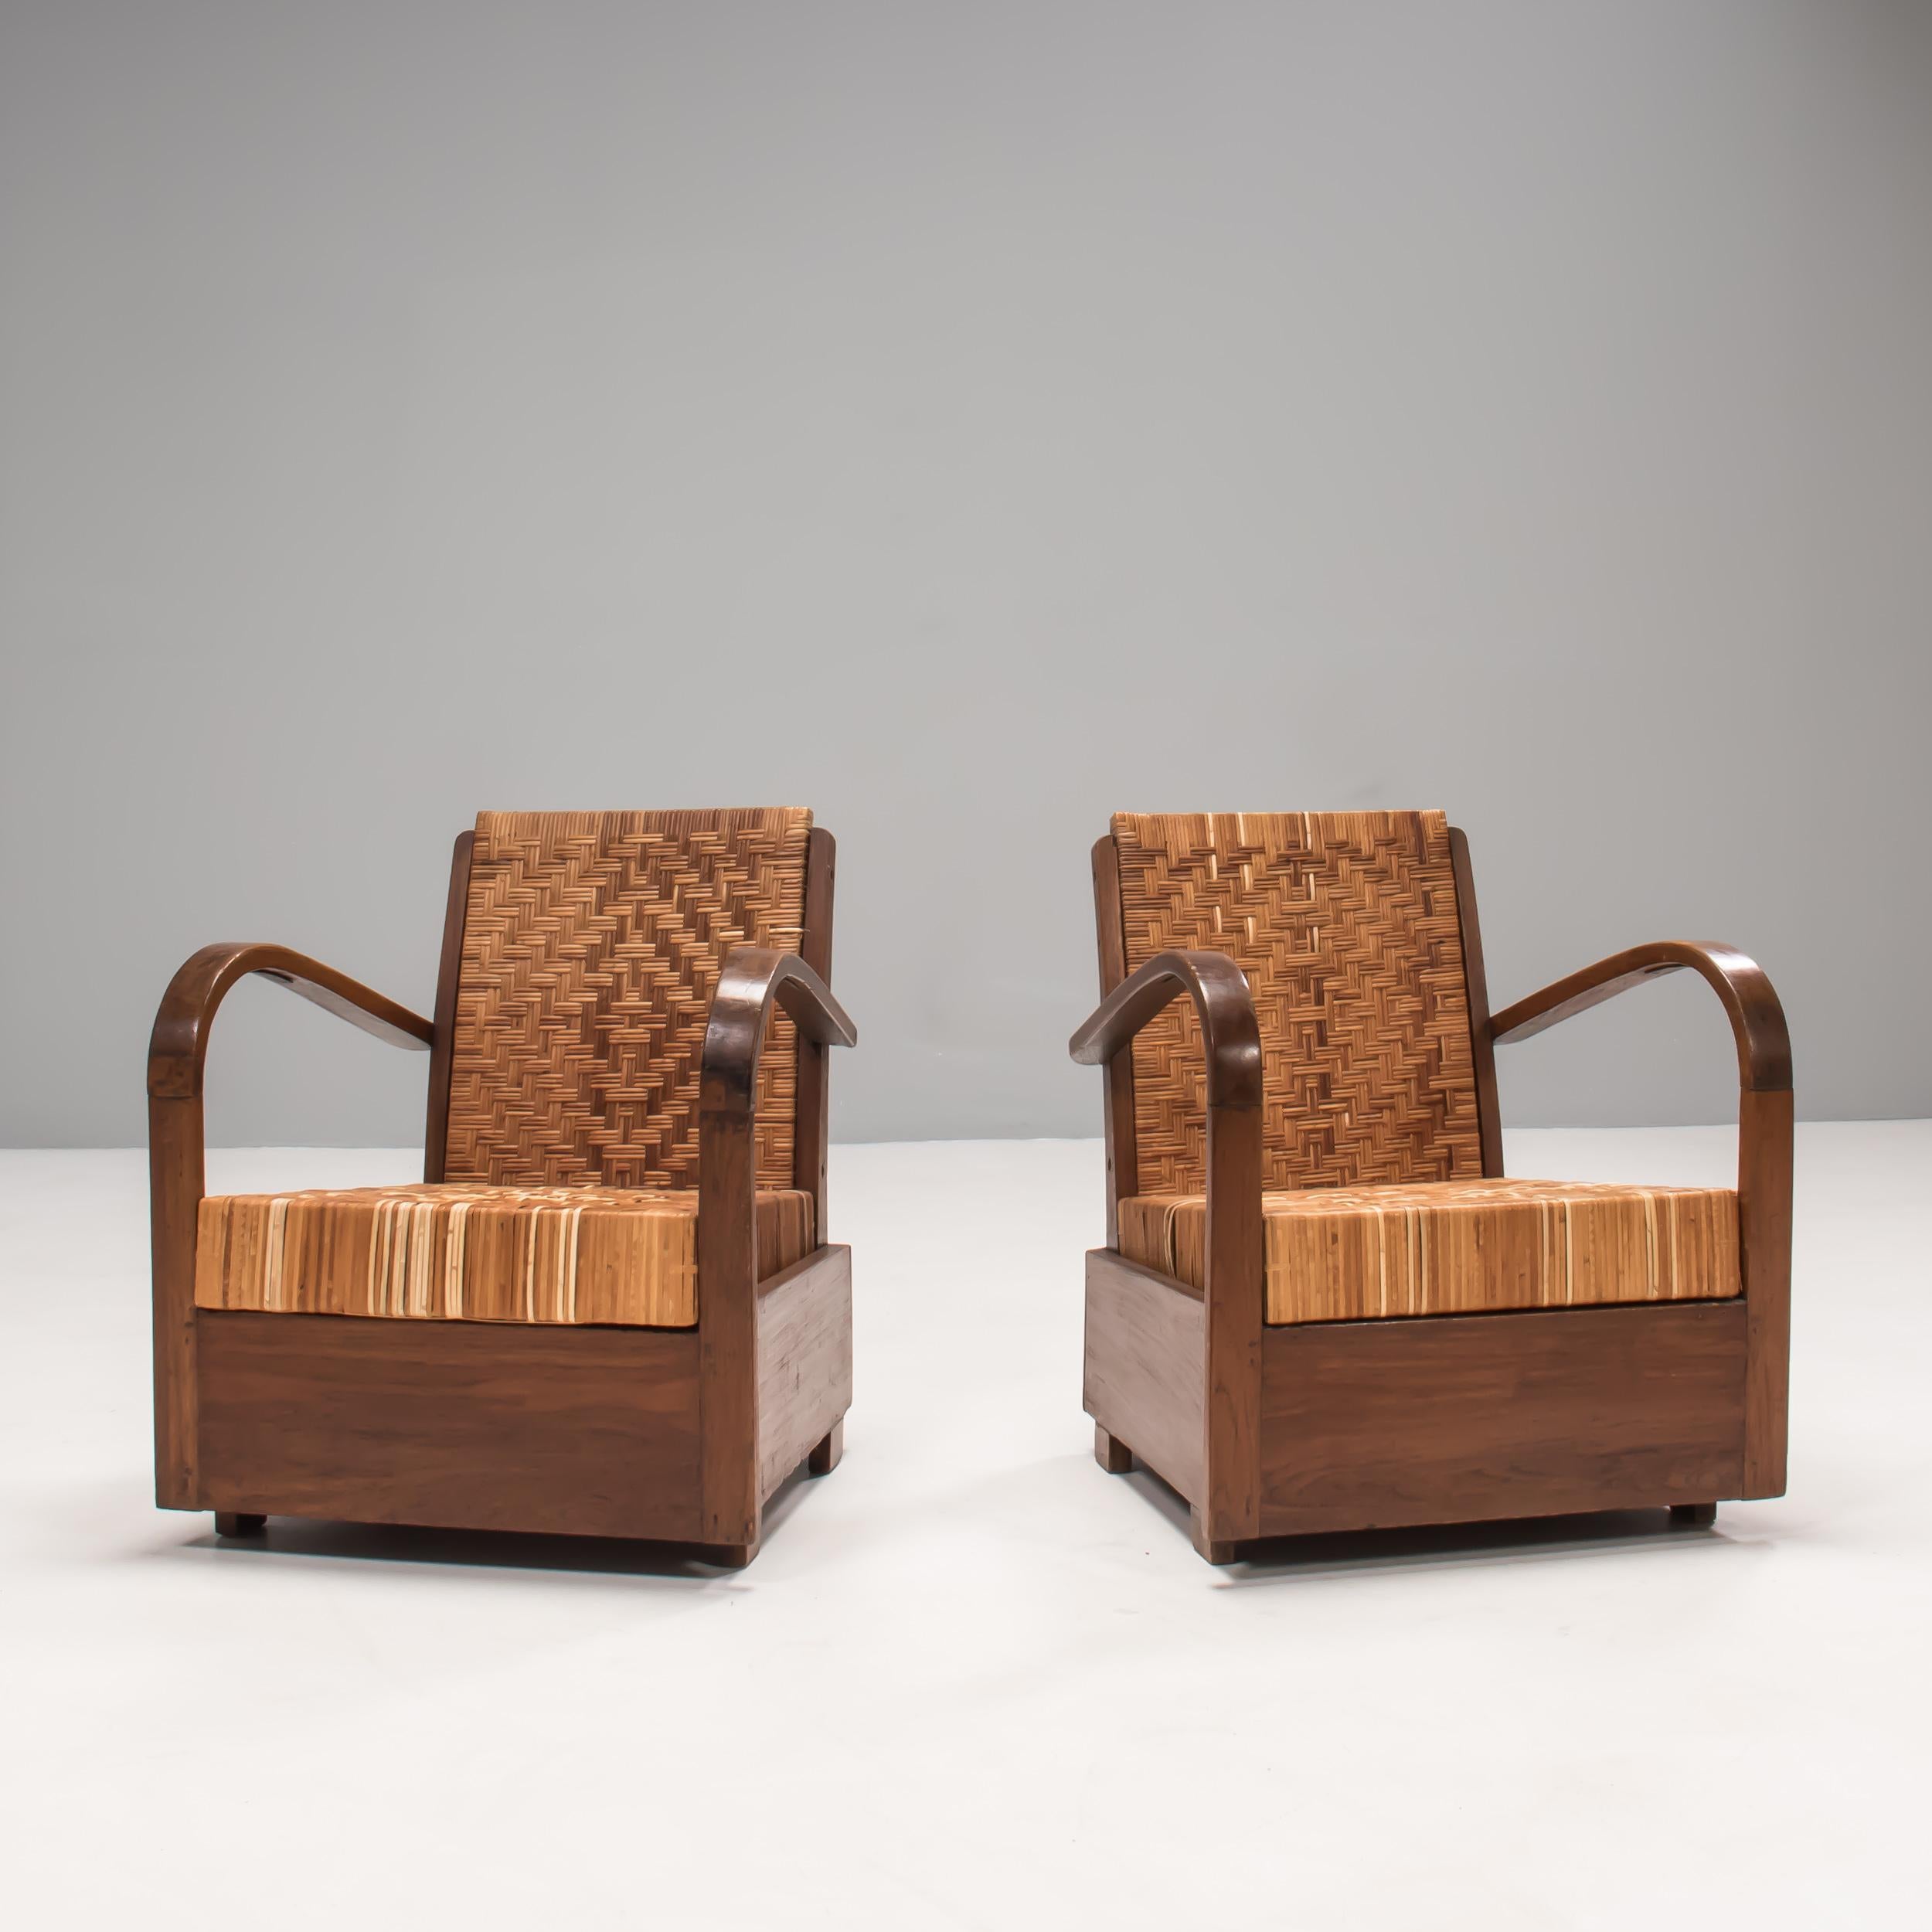 Ein wunderschönes Paar Art-Déco-Sessel, entworfen im Kolonialstil.

Das Gestell aus Teakholz und die Armlehnen aus Bugholz sind mit Schilfrohr gepolstert, wobei ein Stuhl mit einem Fischgrätenmuster und der andere mit einem Rautenmuster versehen